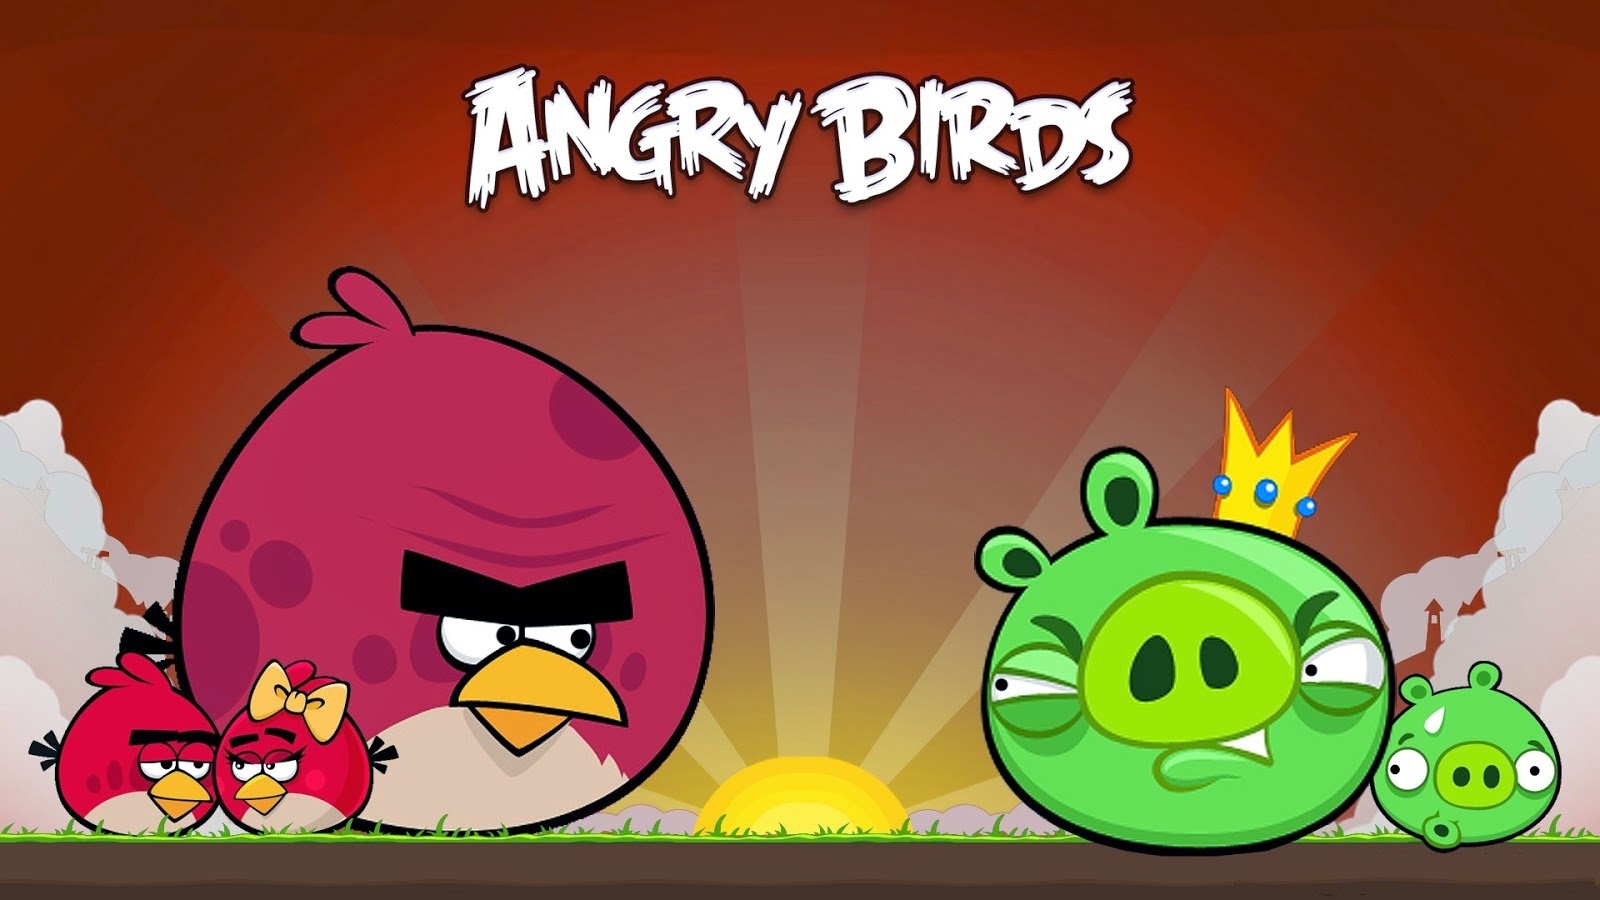 Kumpulan Gambar Angry Birds Gambar Lucu Terbaru Cartoon Animation Pictures